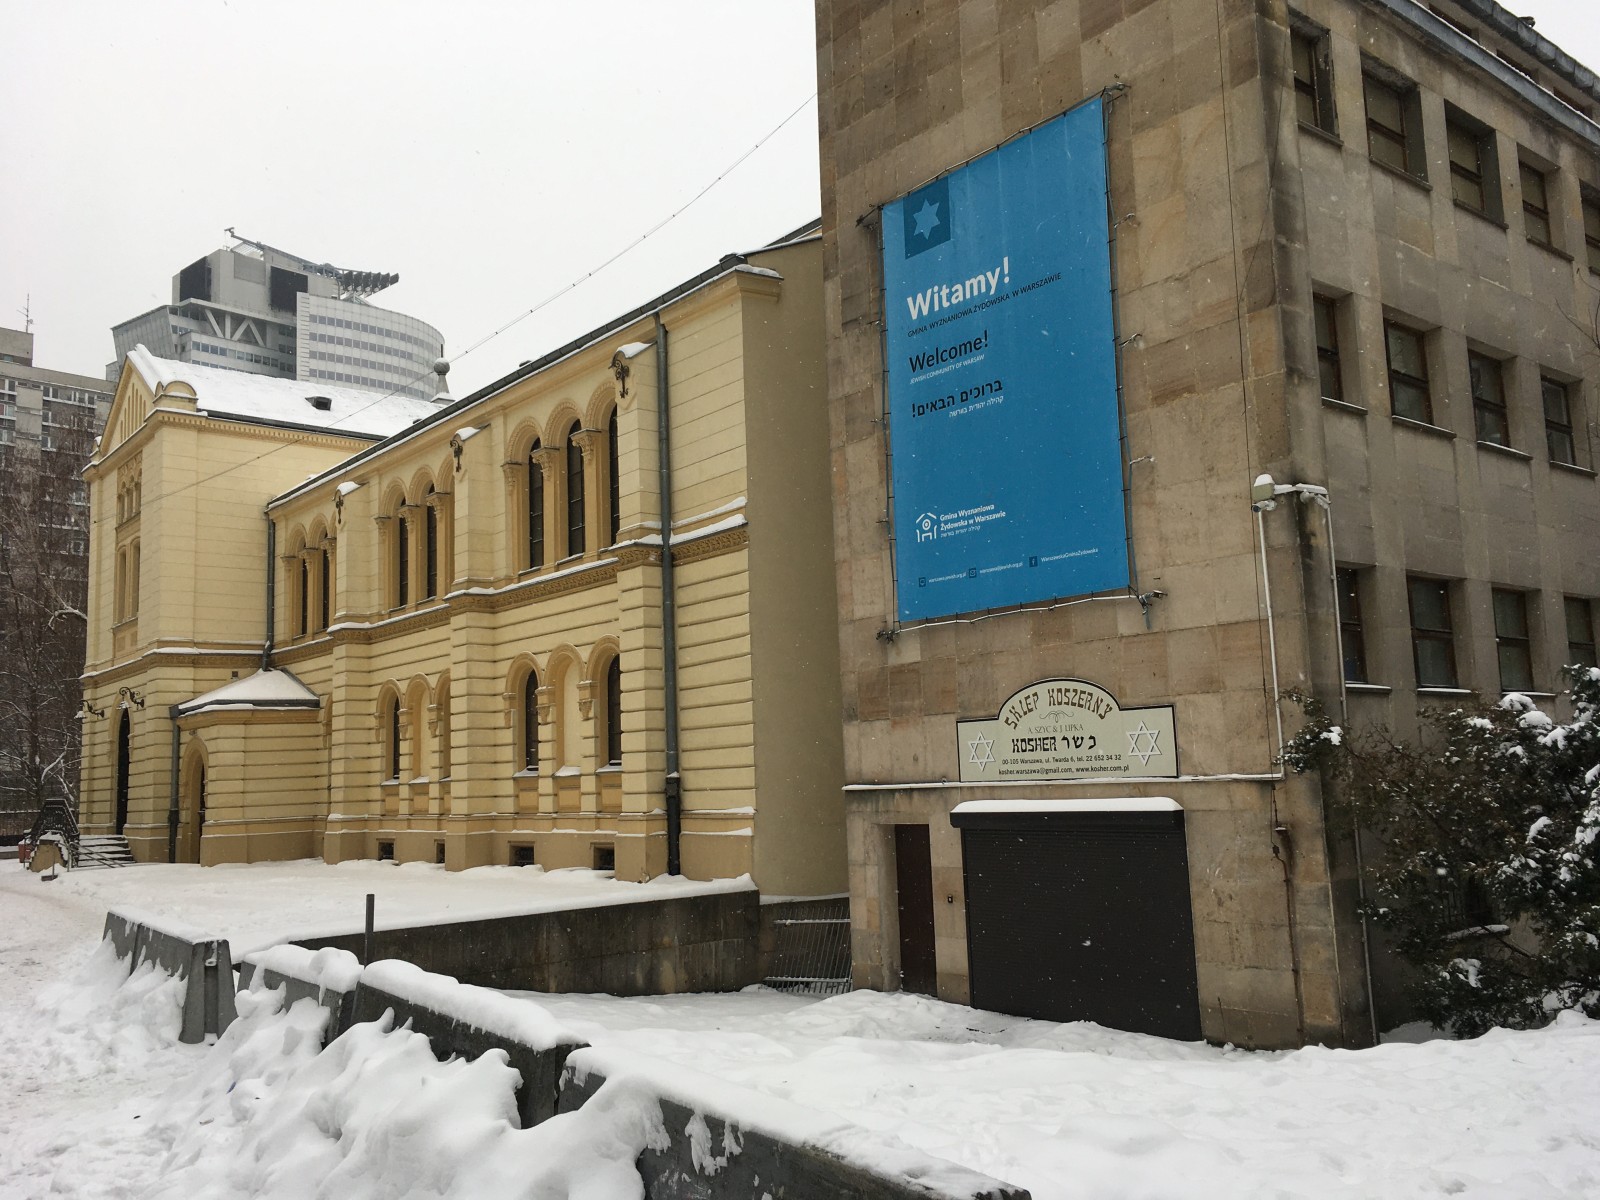 Synagoga im. Nożyków w Warszawie